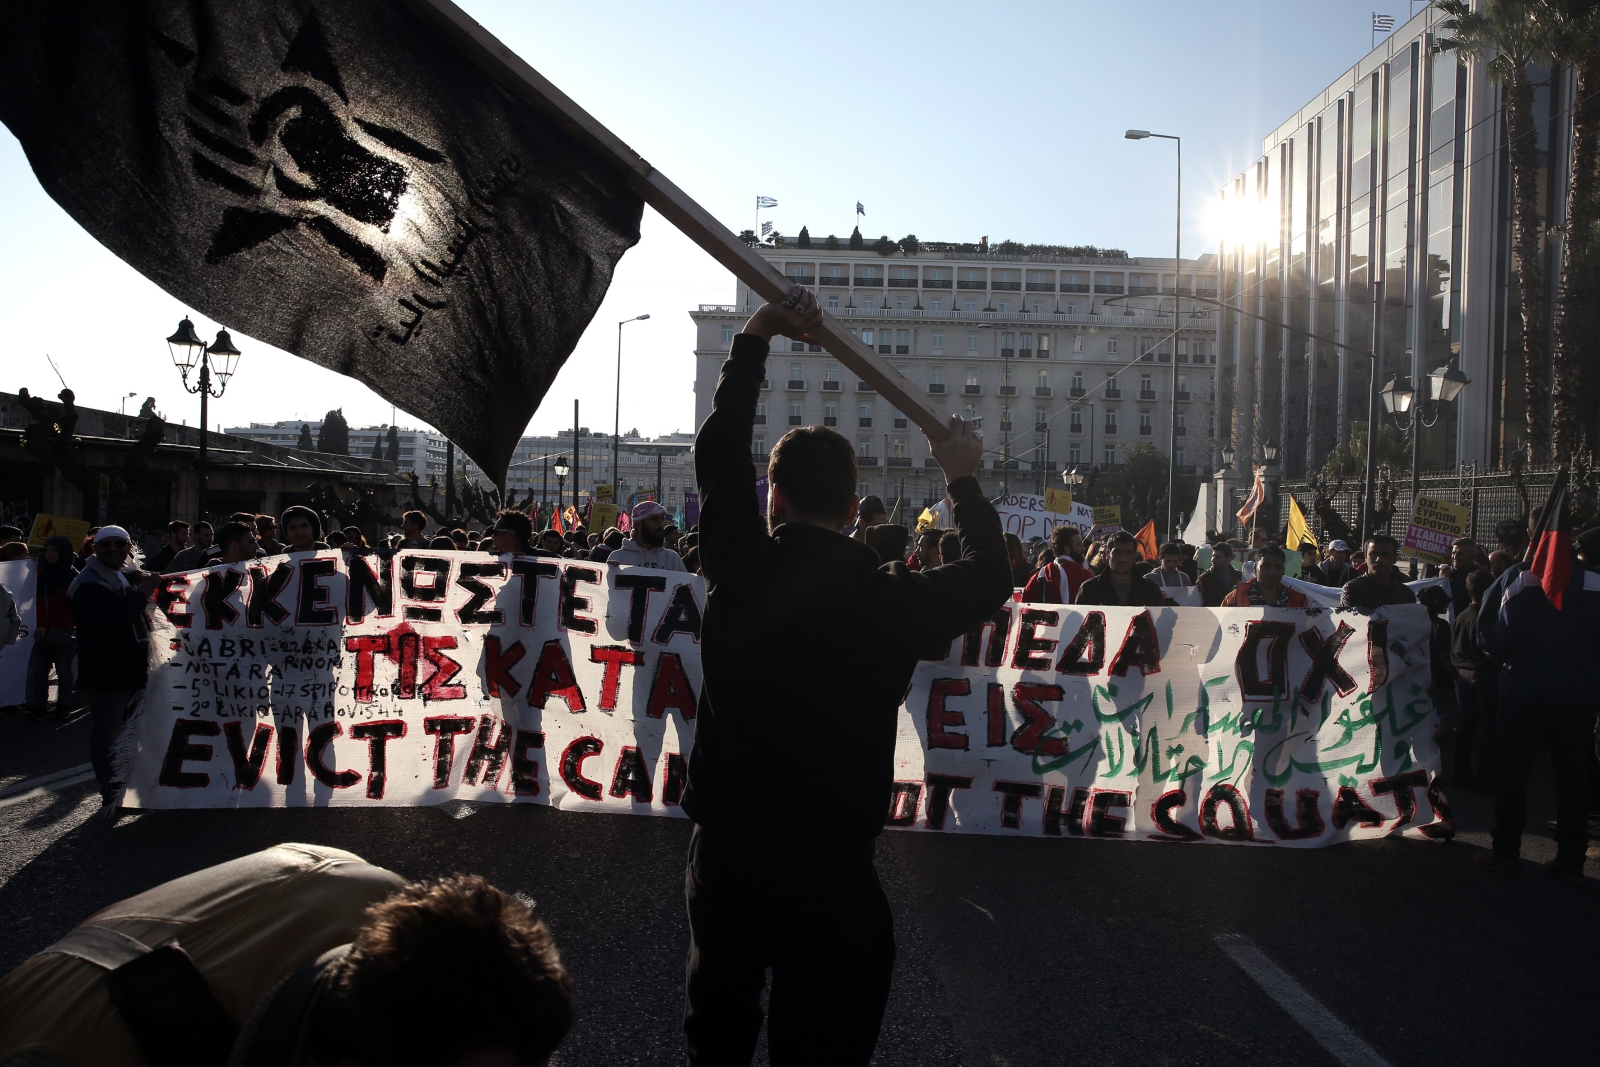 Protestanci krzyczą hasła przeciwko wojnie w Syrii w czasie manifestacji zorganizowanej przez organizacje antyfaszystowskie, Ateny, Grecja.